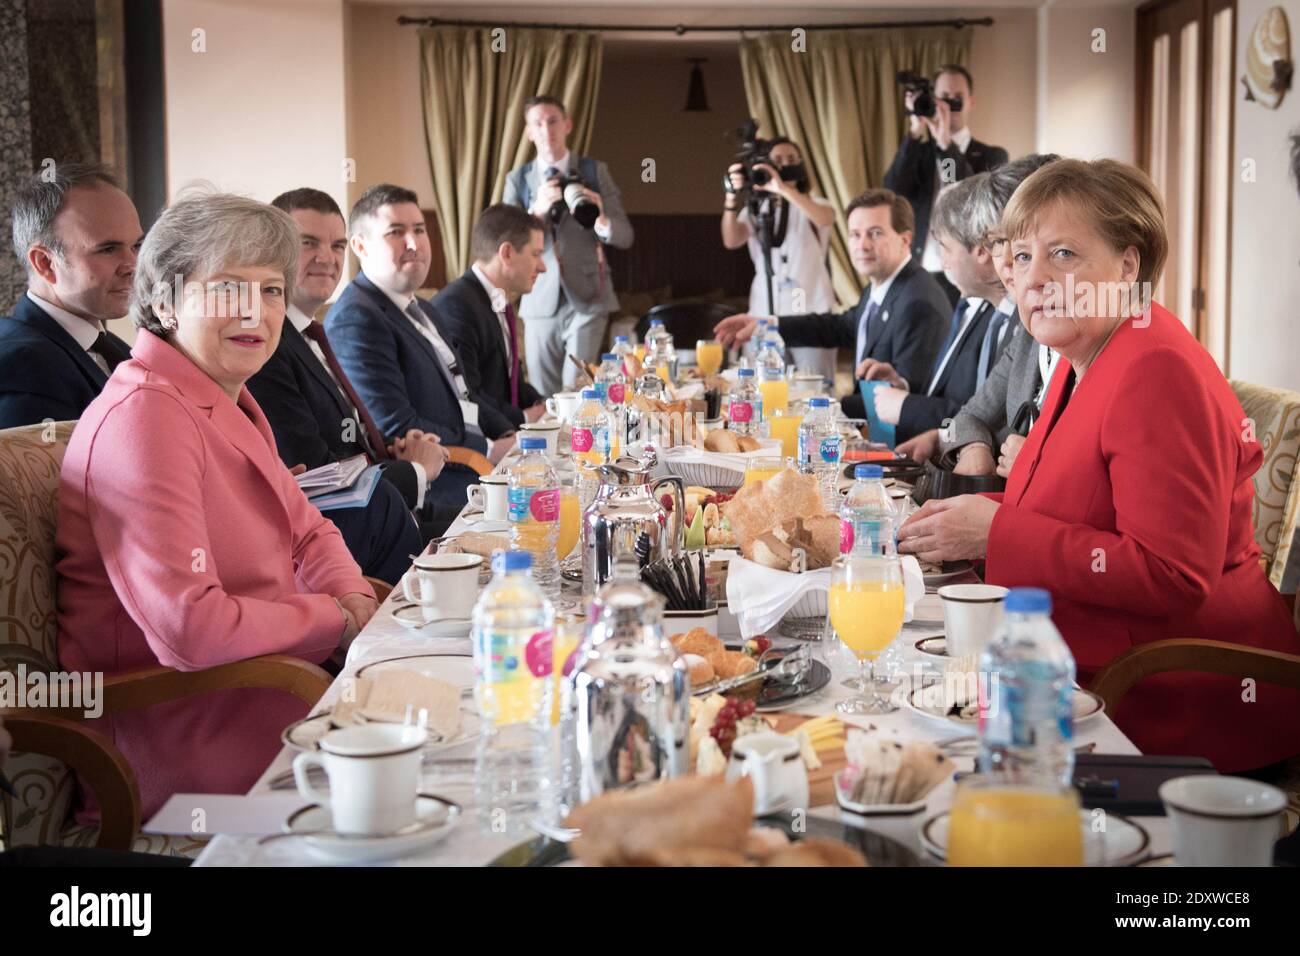 Photo du dossier datée du 25/02/19, de la première ministre de l’époque, Theresa May (à gauche), qui assistait à un petit-déjeuner de travail avec la chancelière allemande Angela Merkel (à droite) lors du sommet UE-Ligue des États arabes à Charm El-Cheikh, en Égypte. Le Royaume-Uni et l'UE sont parvenus à un accord commercial post-Brexit. Banque D'Images